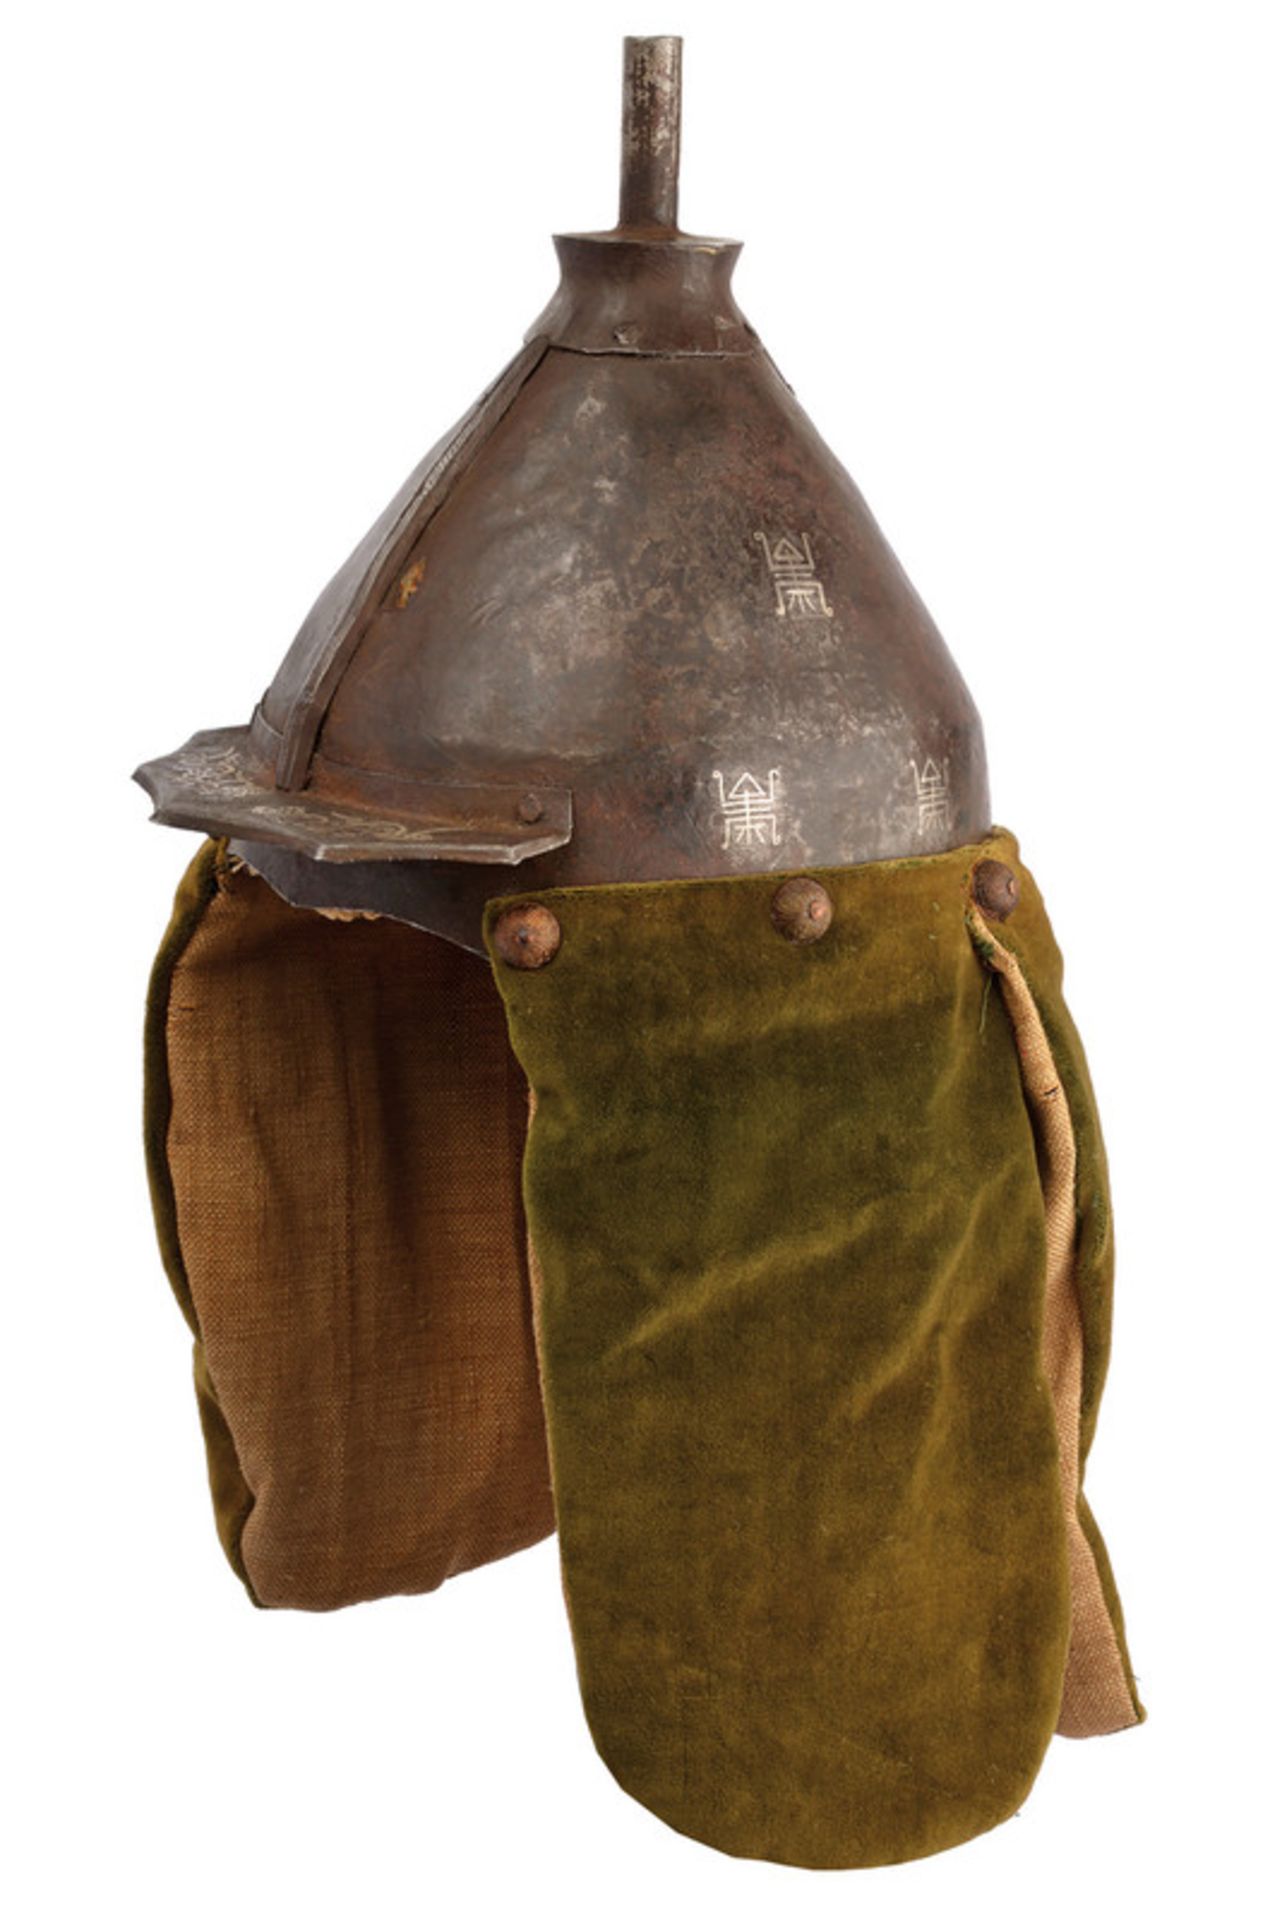 A warrior's helmet